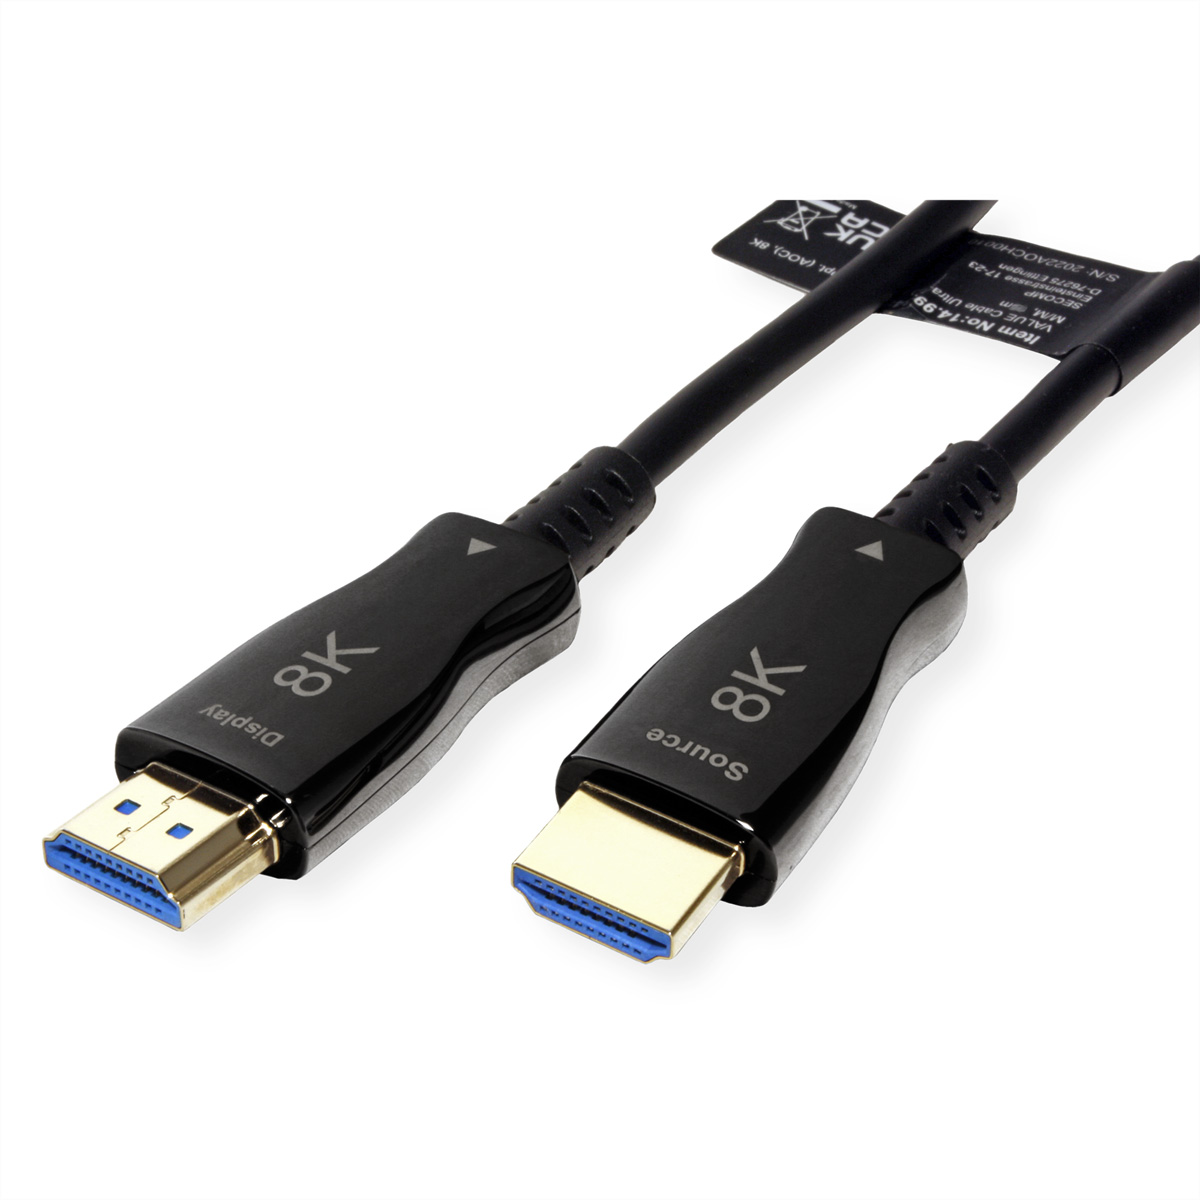 Optisches Aktiv Kabel Ultra Ultra HD Ethernet Kabel mit HDMI 8K VALUE HDMI